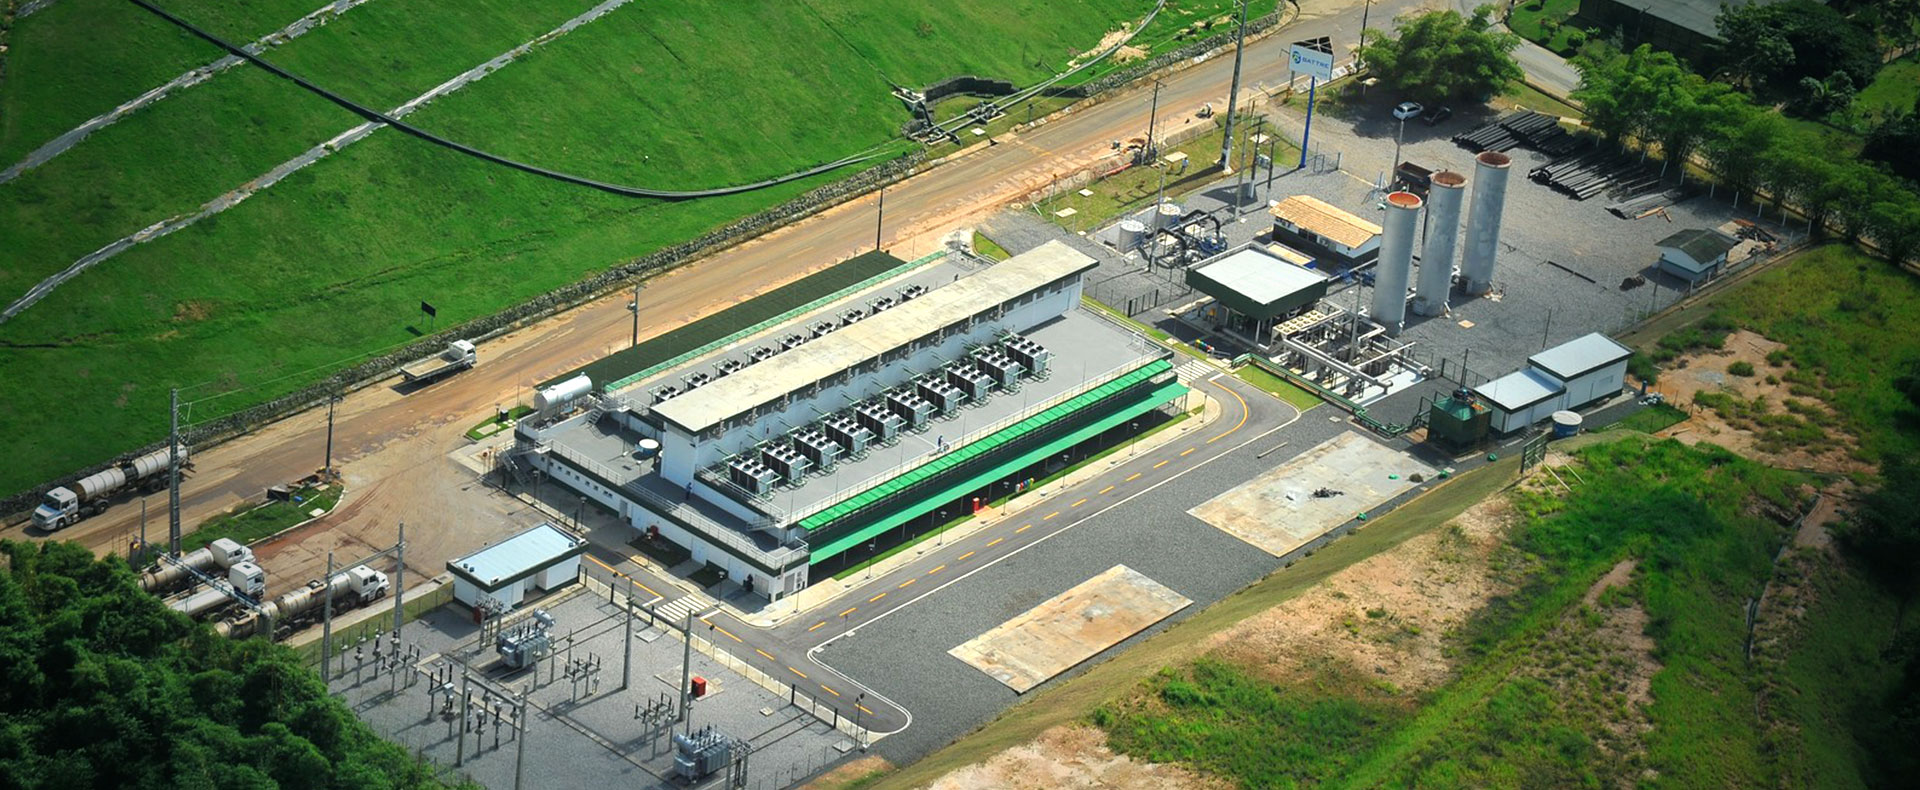 Projeto de carbono do aterro sanitário Metropolitano Centro de Salvador da Bahia, localizado em Lauro de Freias (BA) - Biofílica